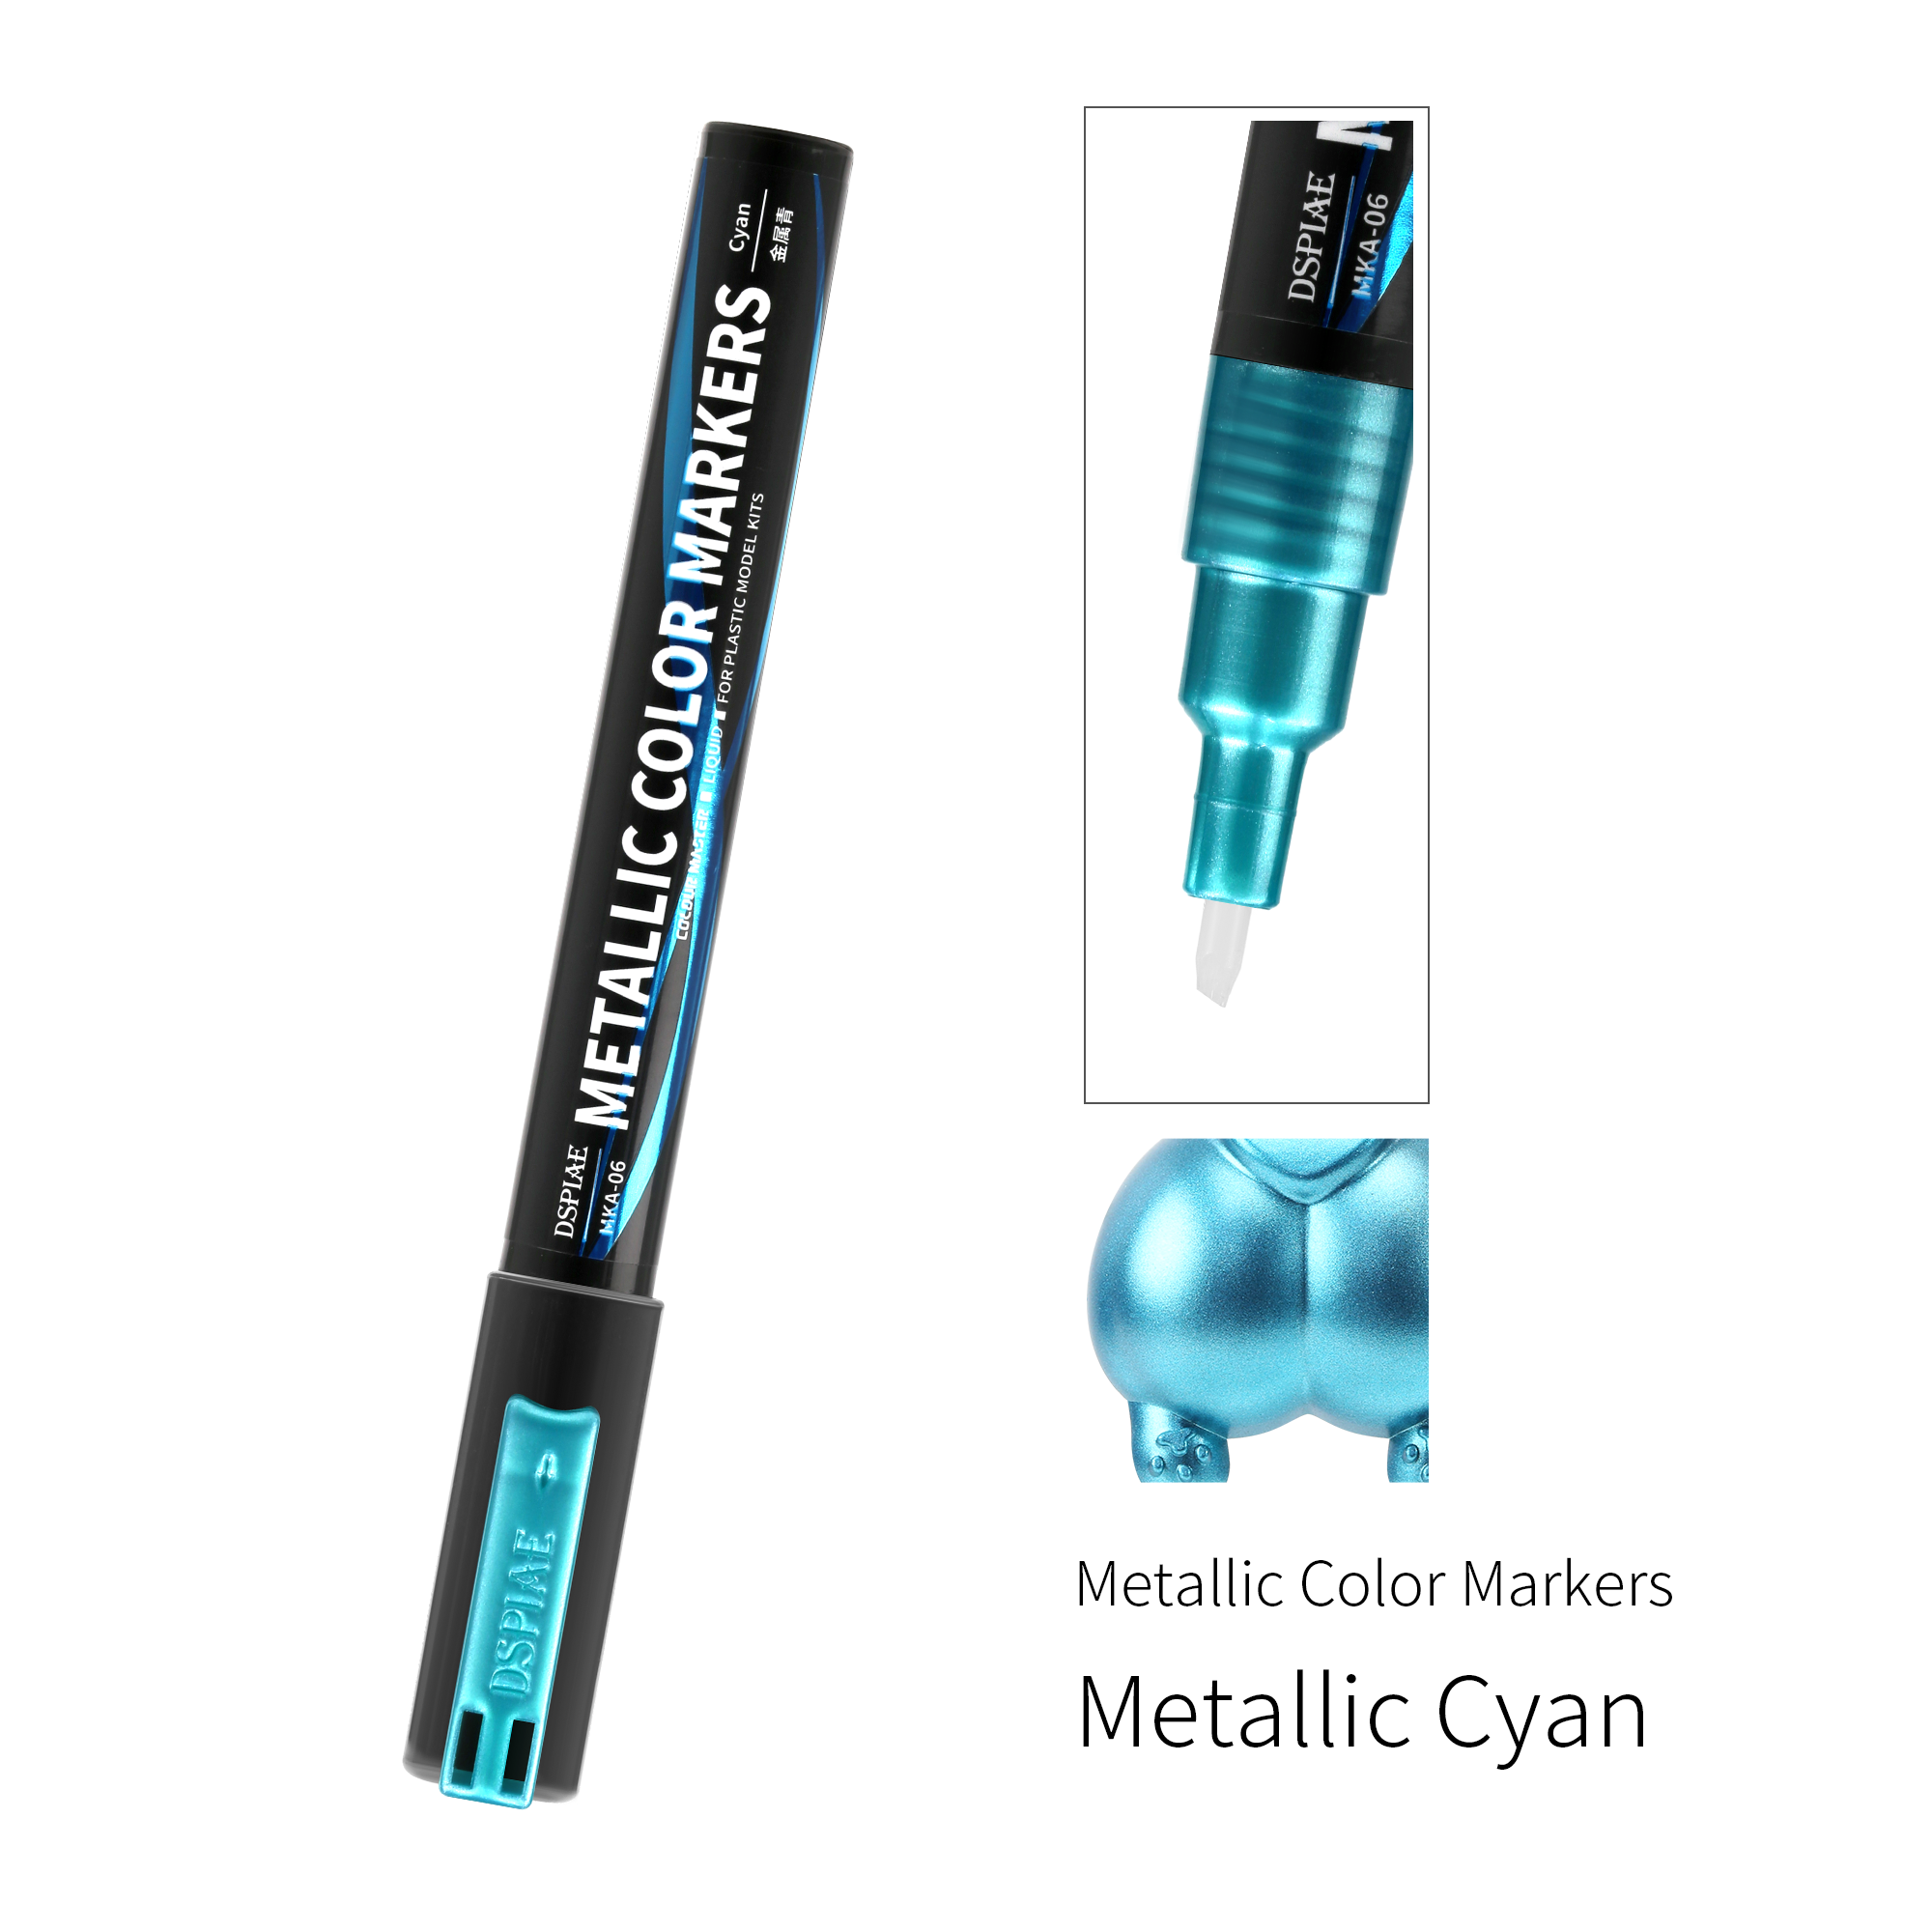 DSPIAE MKA Super Metallic Colour Master Marker